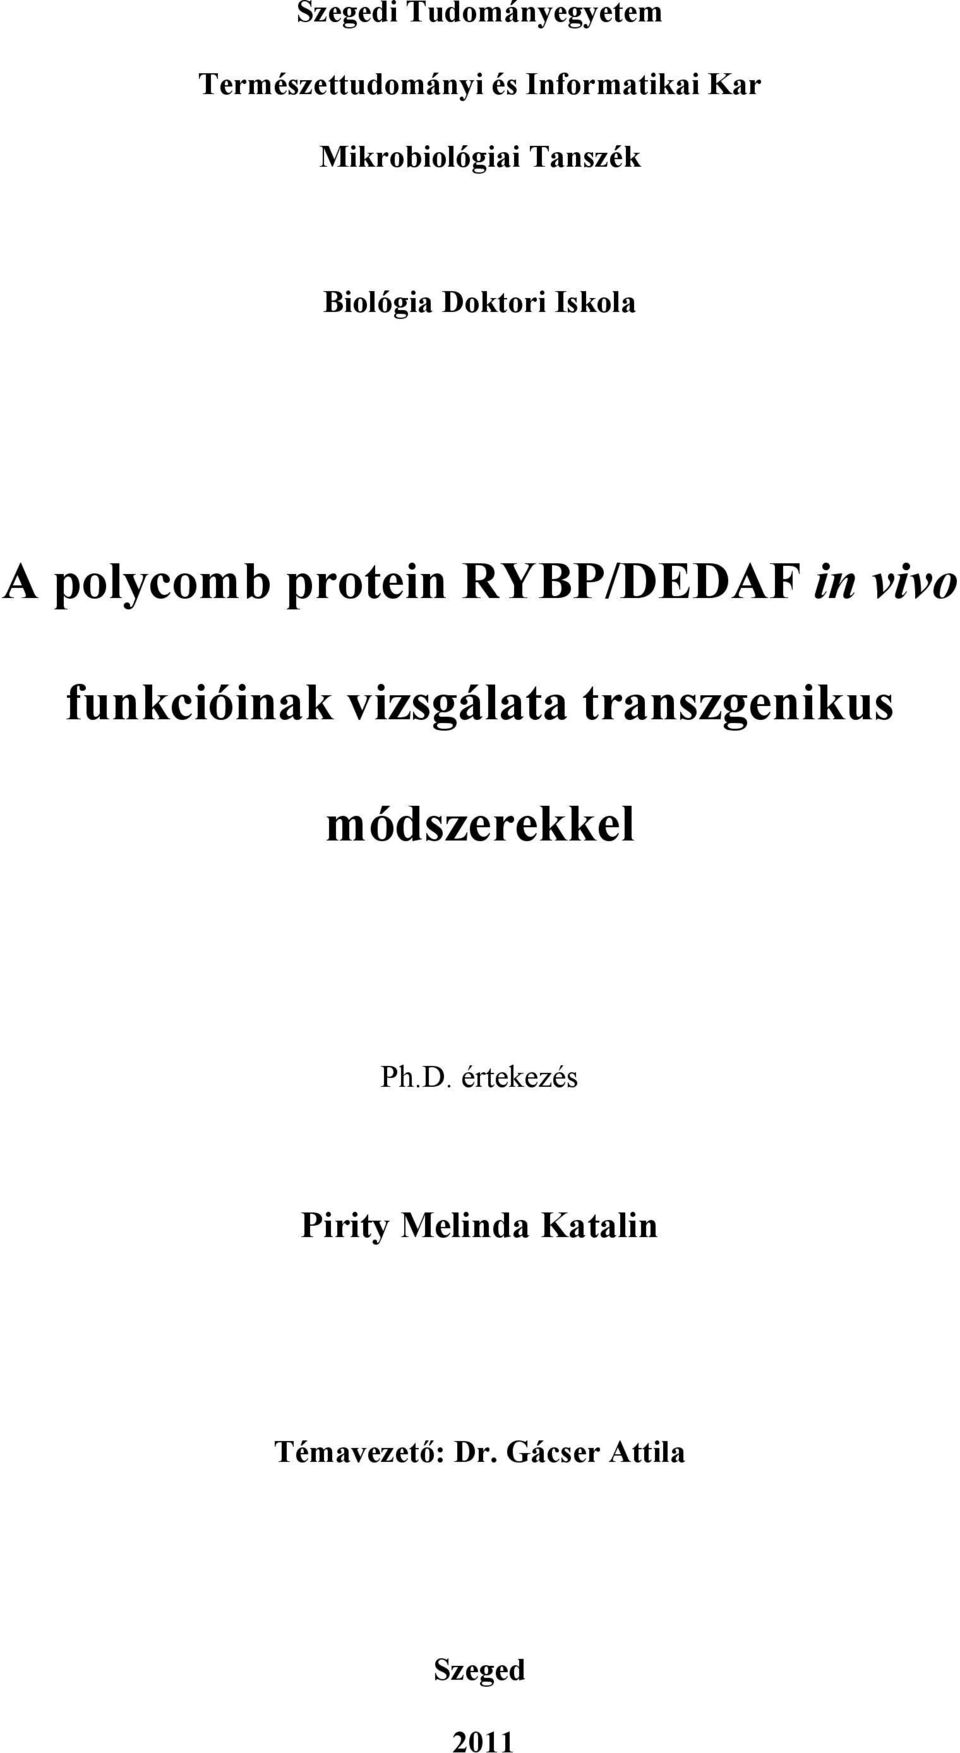 RYBP/DEDAF in vivo funkcióinak vizsgálata transzgenikus módszerekkel